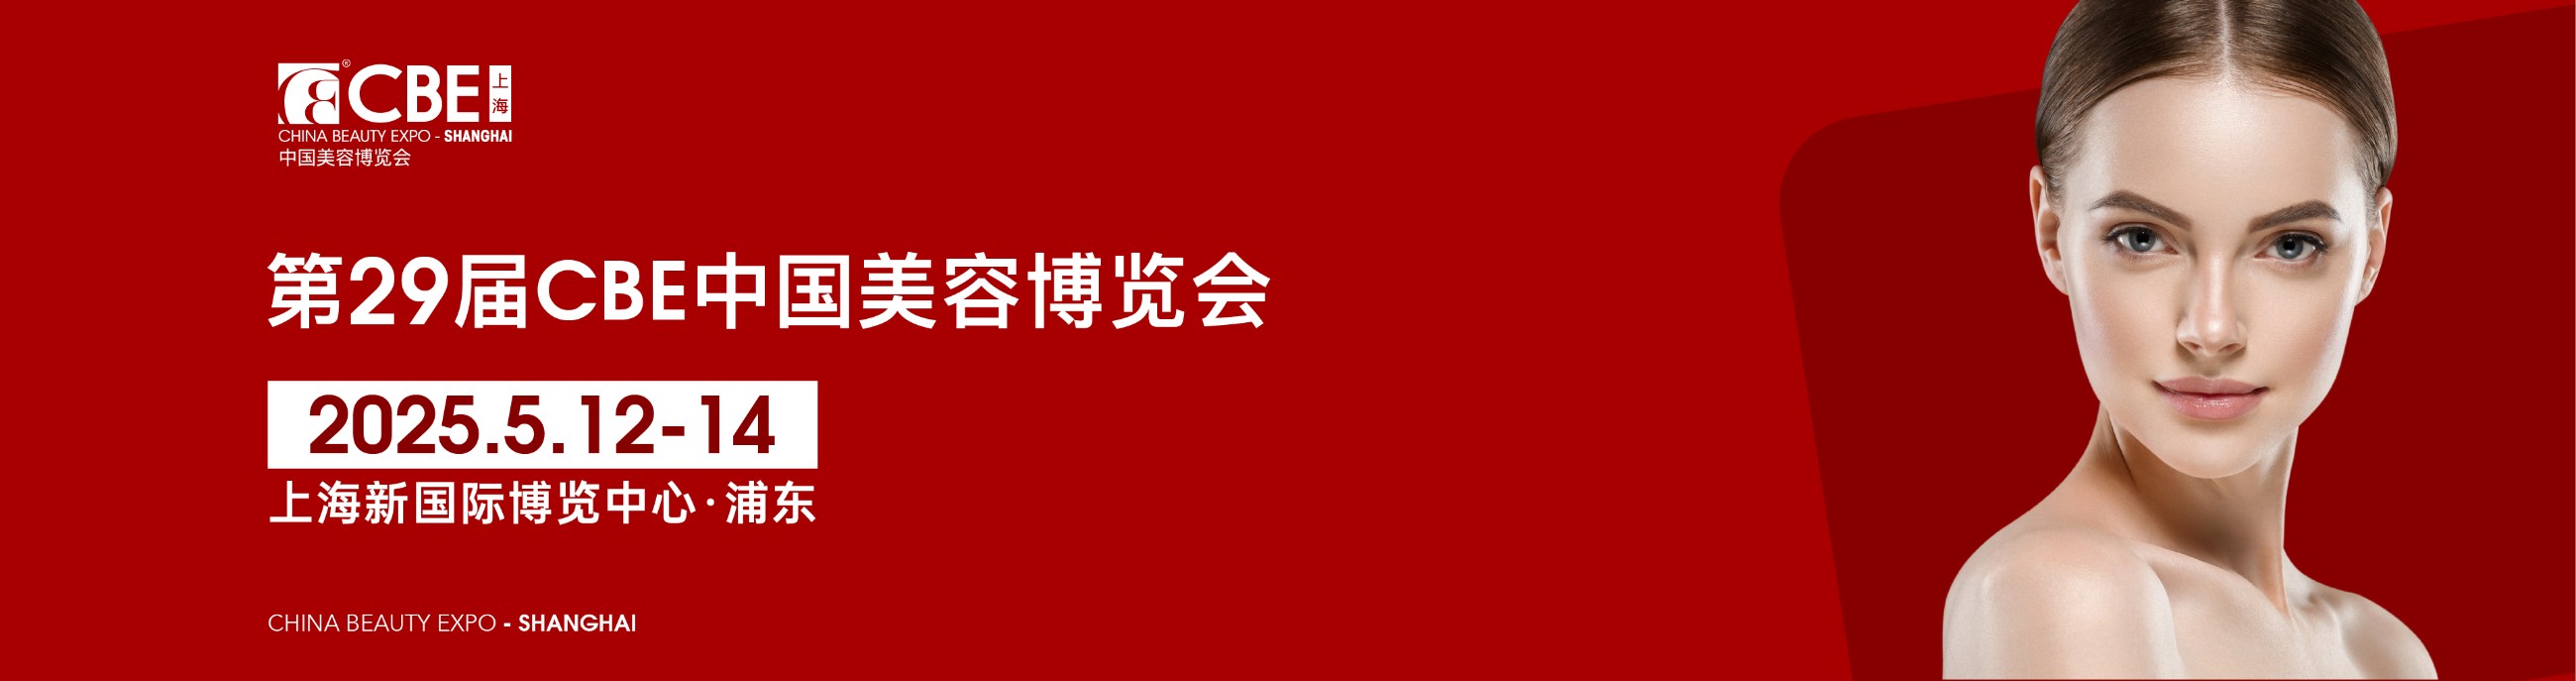 官网banner最新.jpg